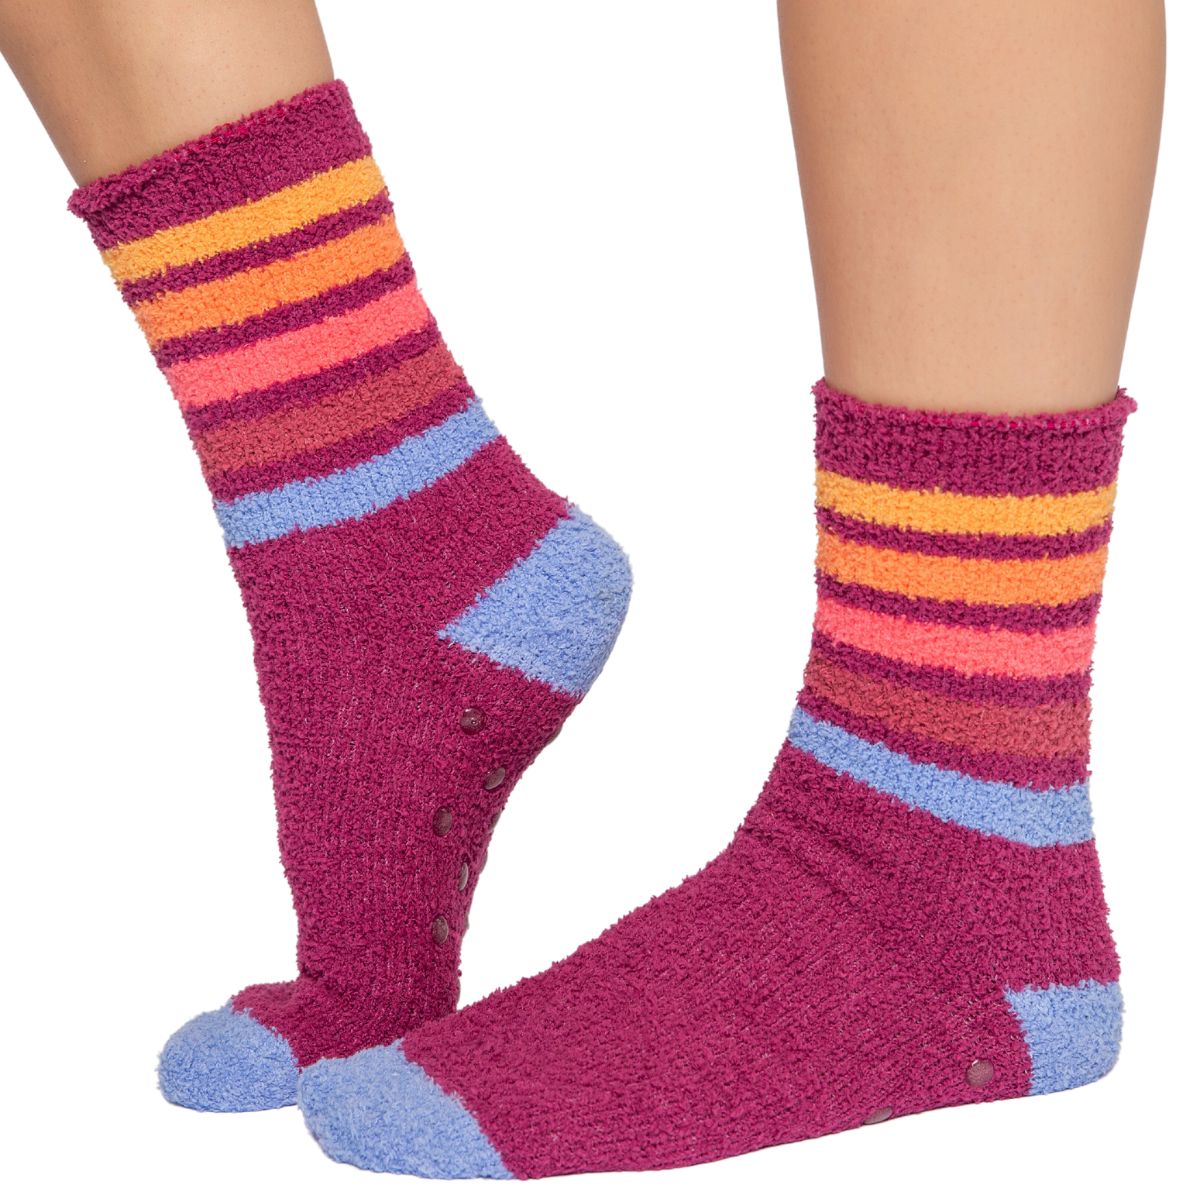 PJ Salvage Fun Socks in Raspberry